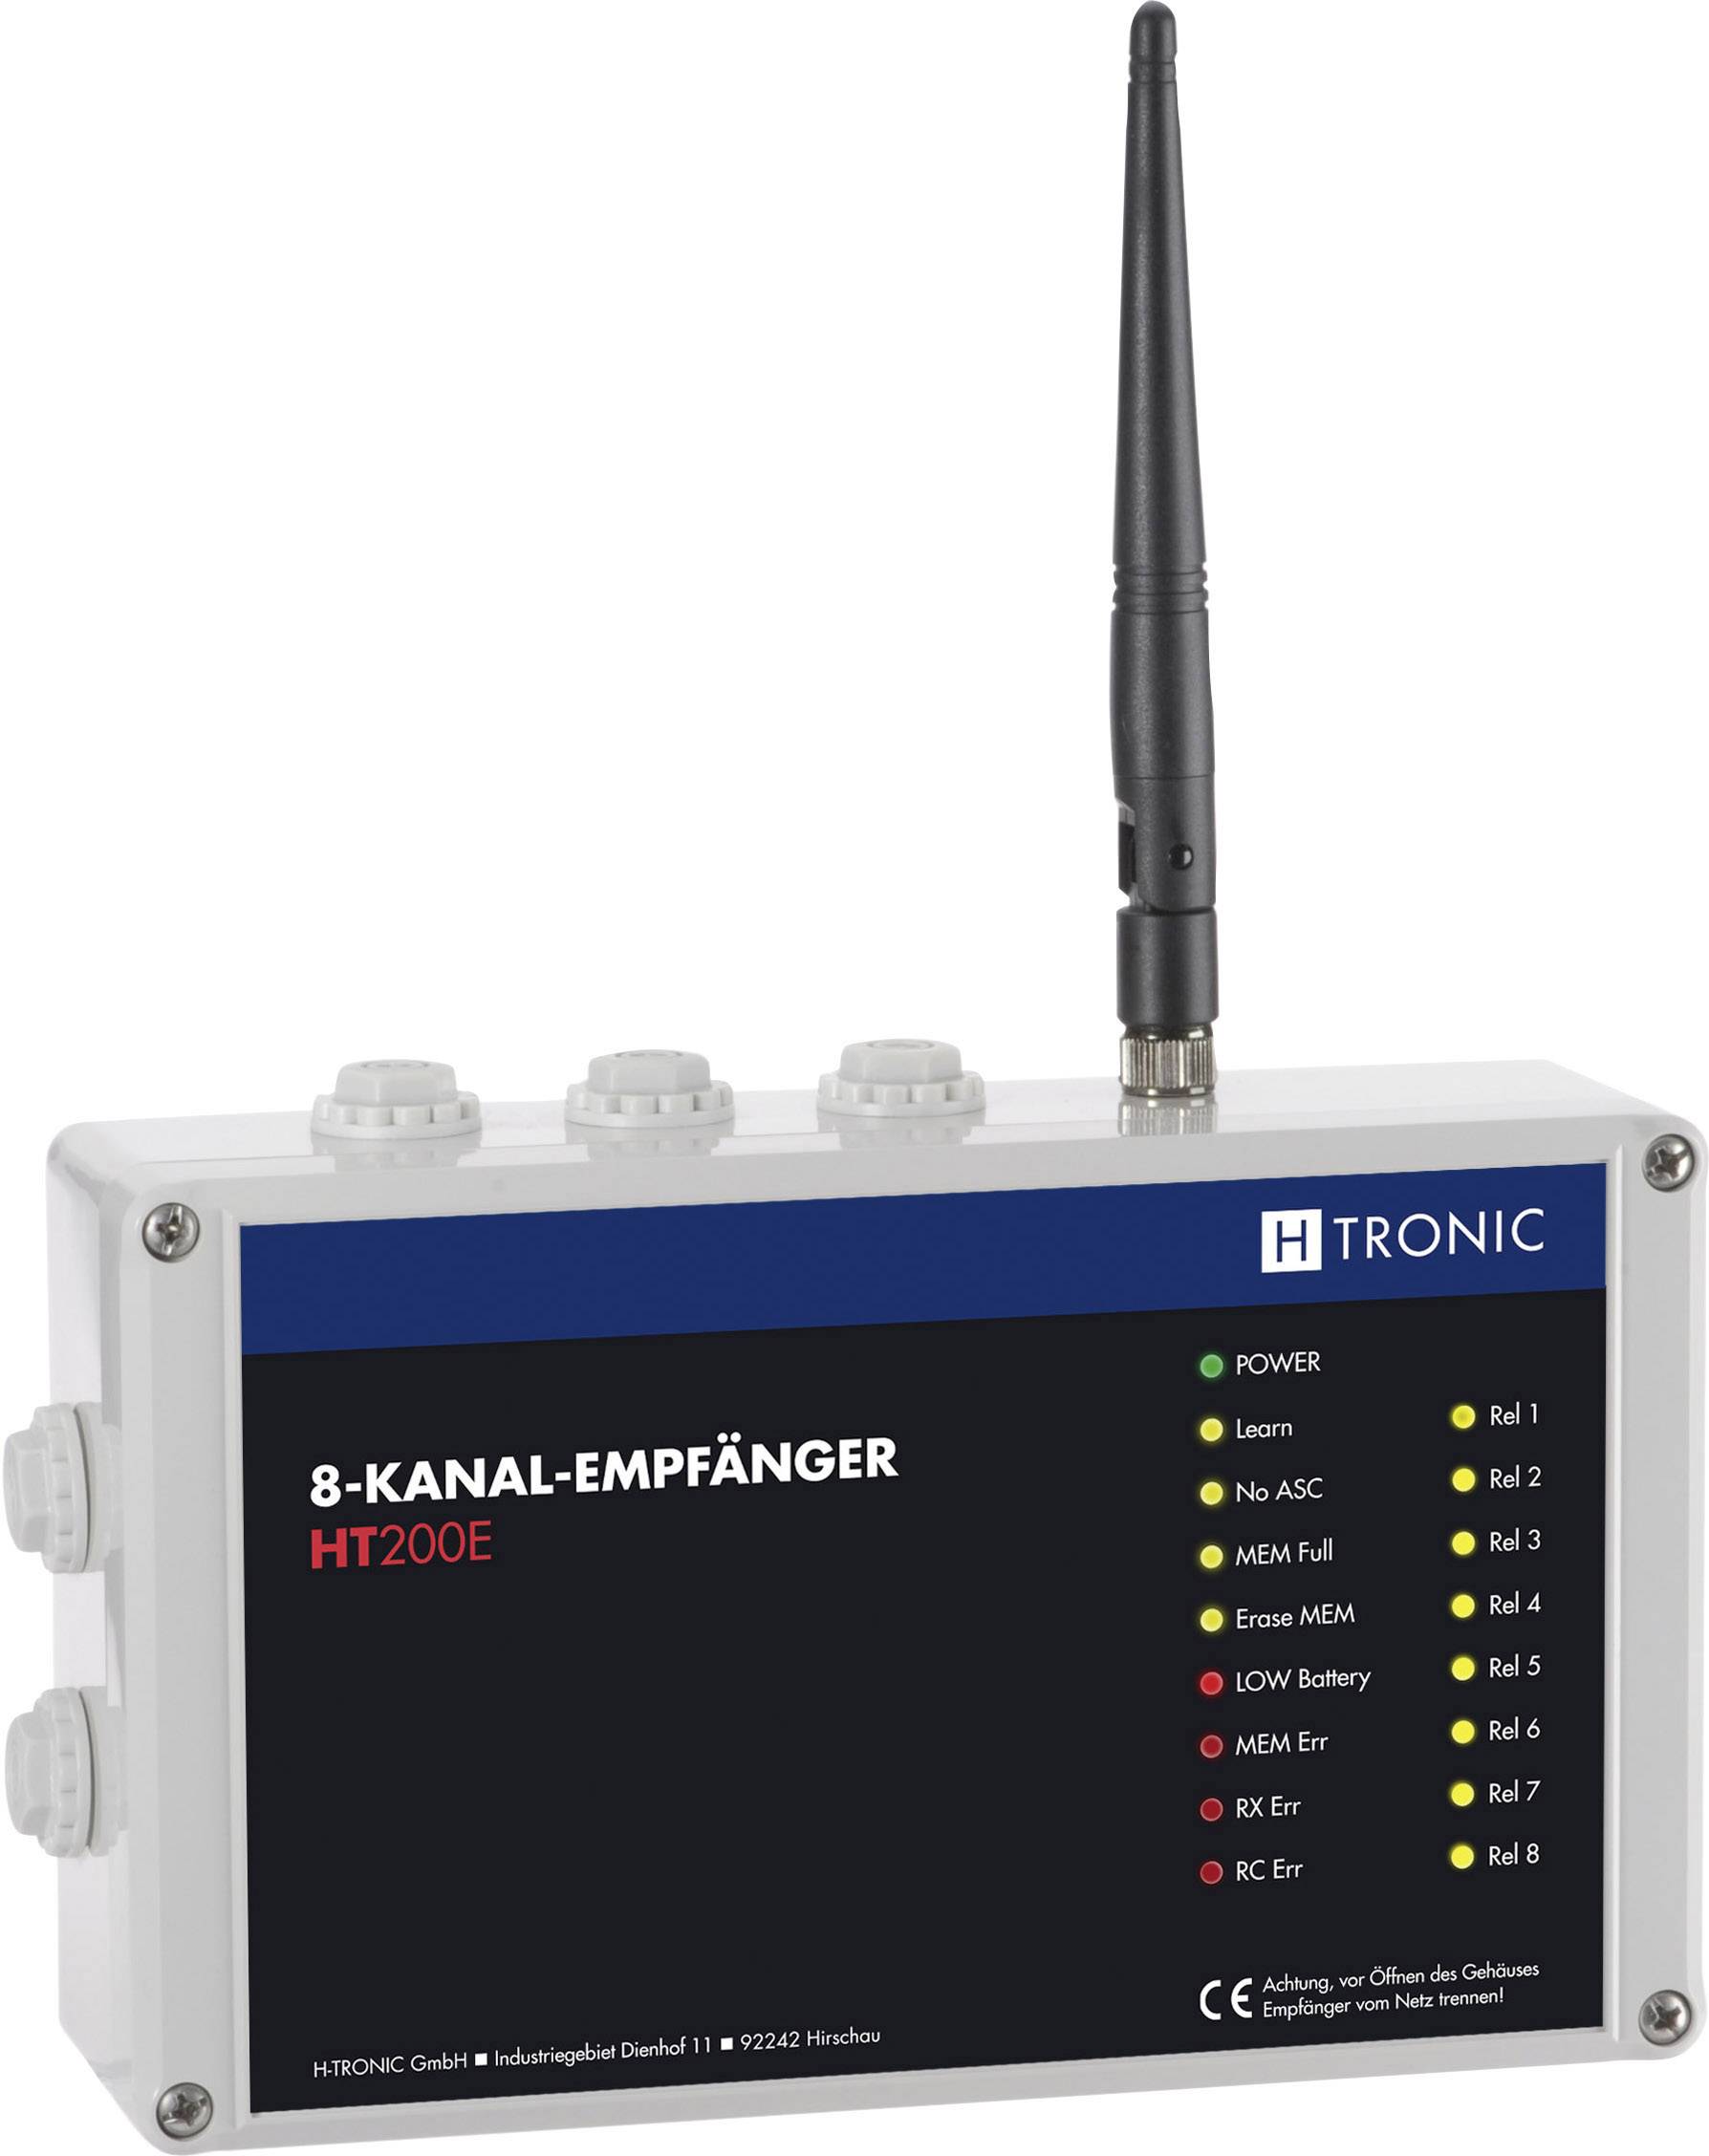 H-TRONIC Funkempfänger 8-Kanal Frequenz 868.35 MHz, 869.05 MHz, 869.55 MHz H-Tronic 1618250 Reichwei